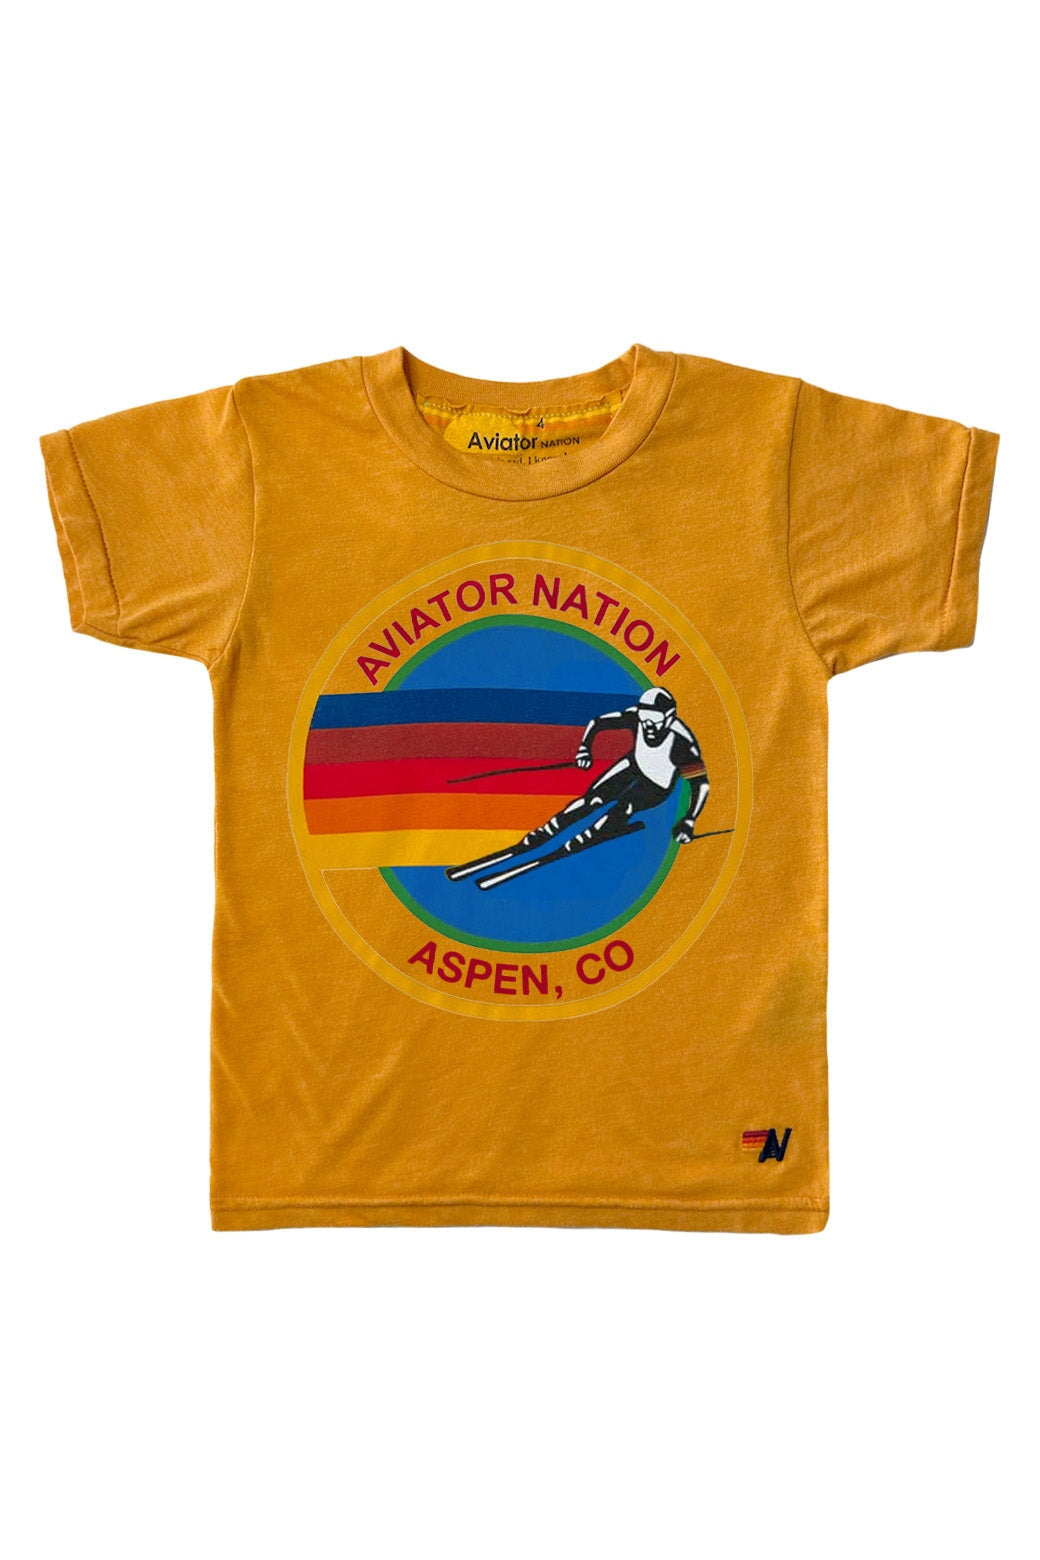 KID'S AVIATOR NATION ASPEN TEE - GOLD Kid's Tee Aviator Nation 